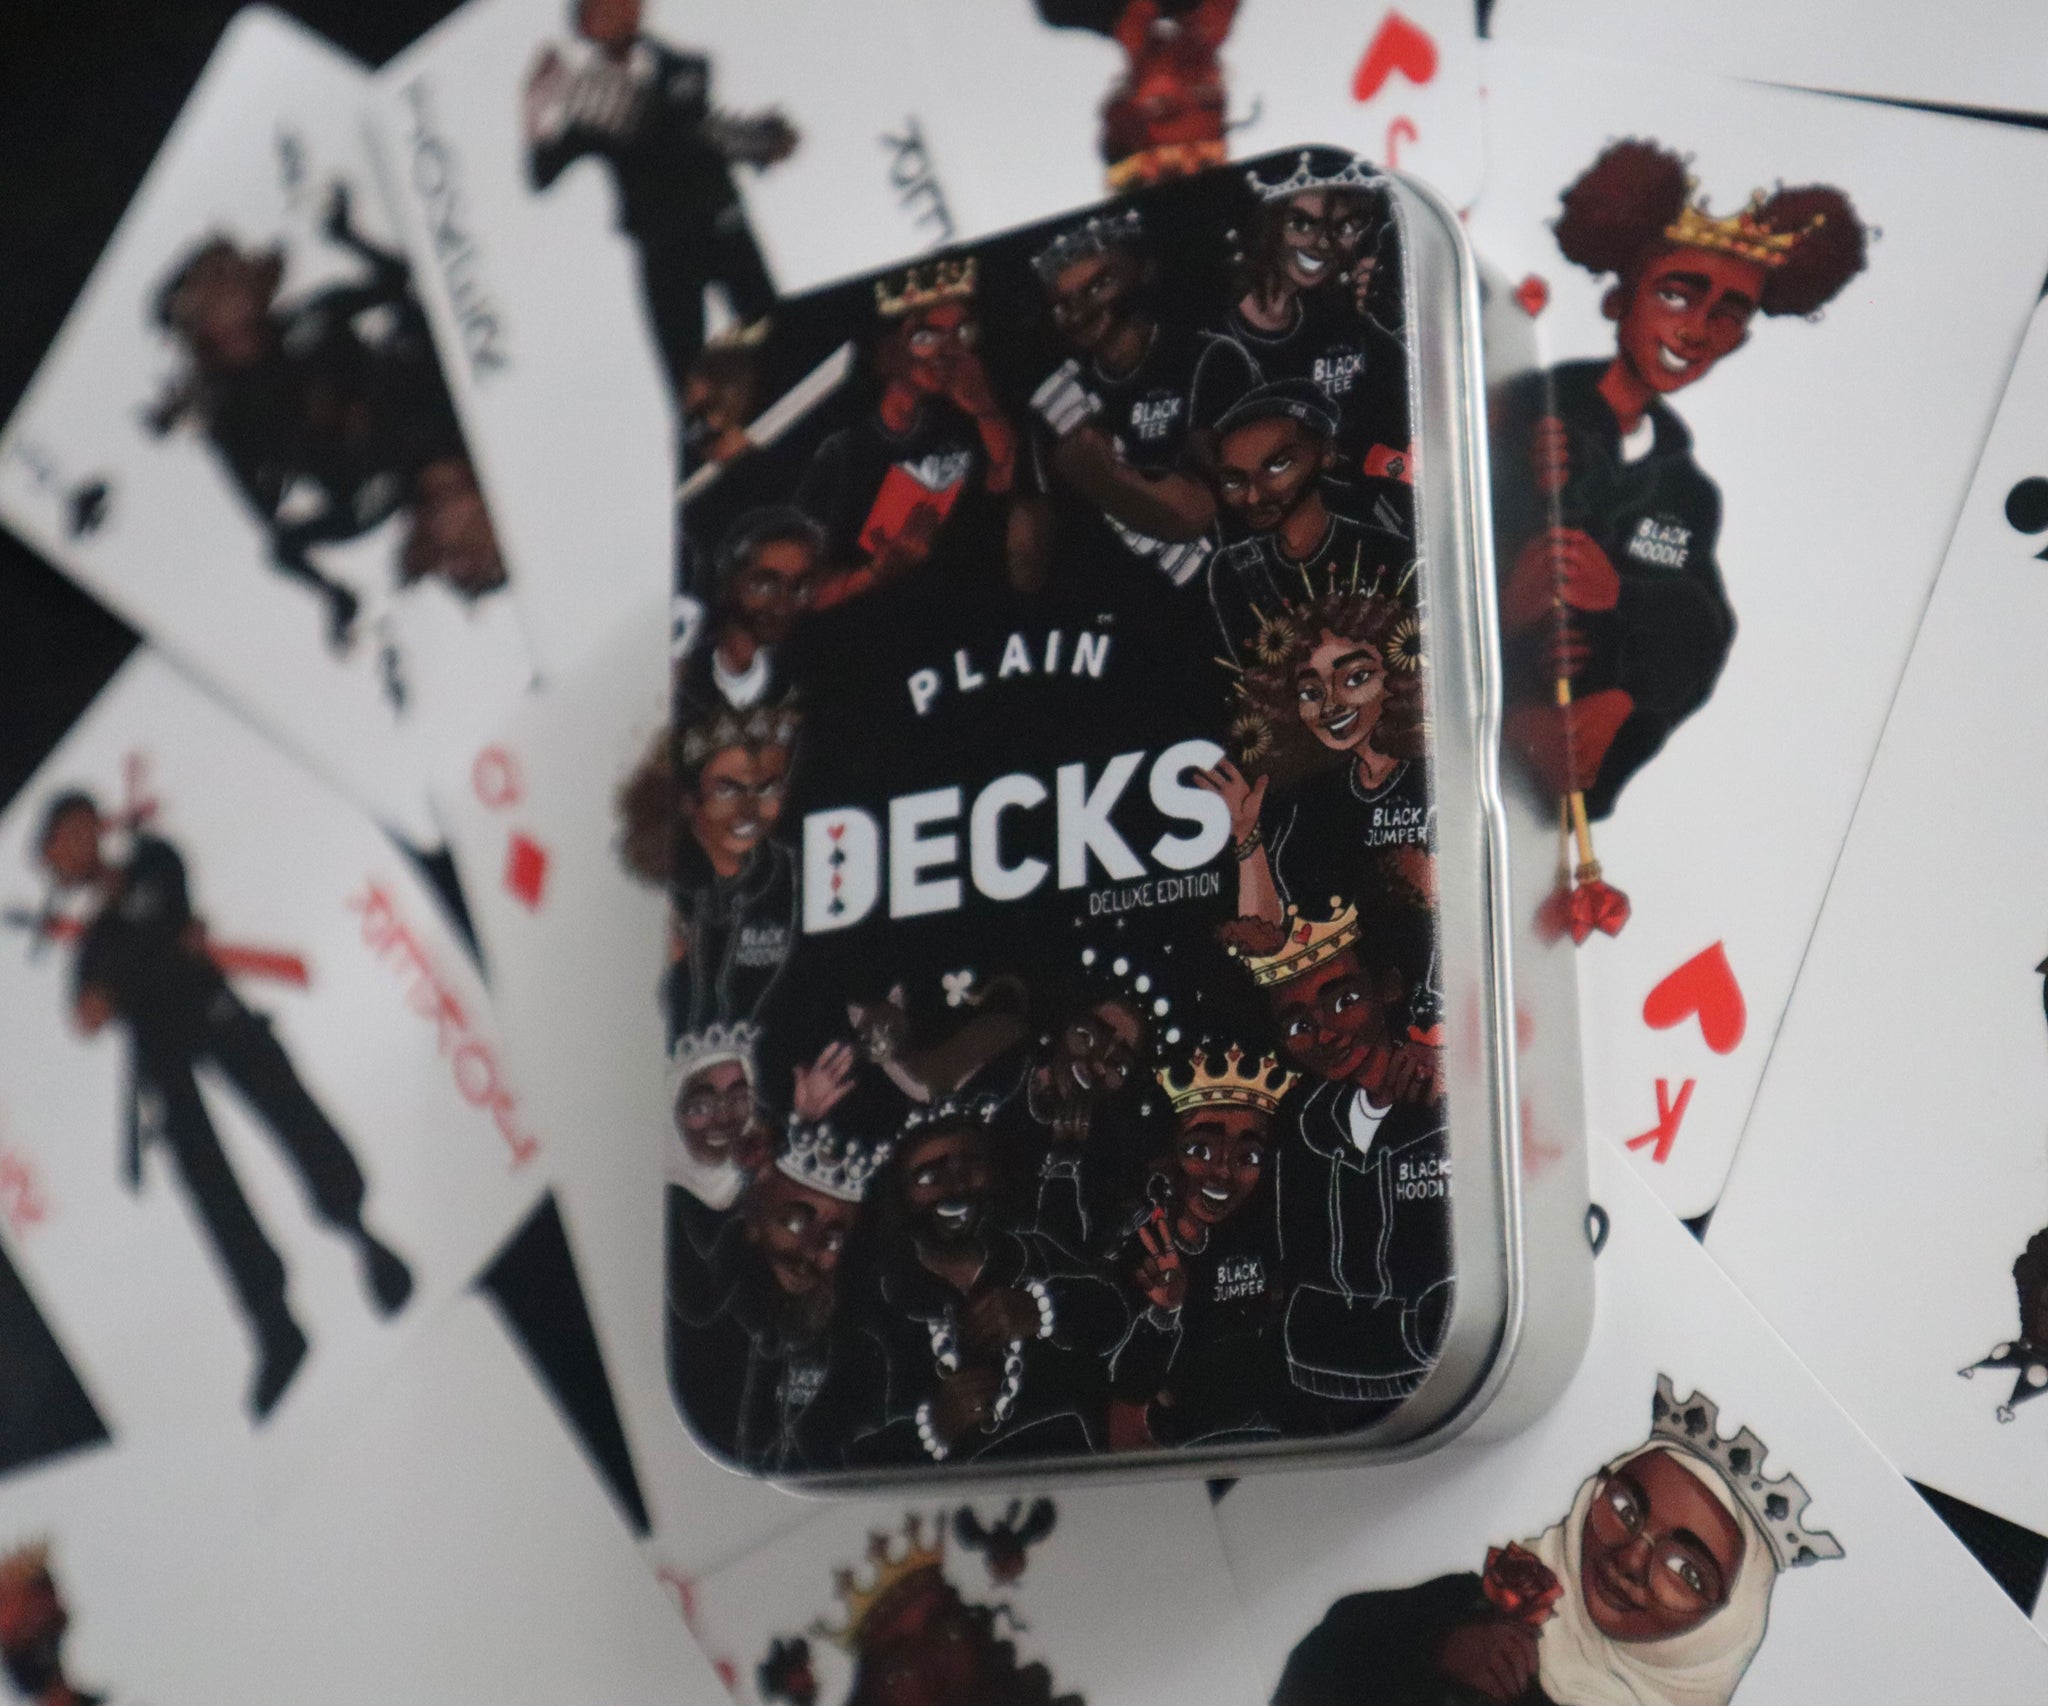 Plain™ Black Cards - Plain™ Decks (Season 2)